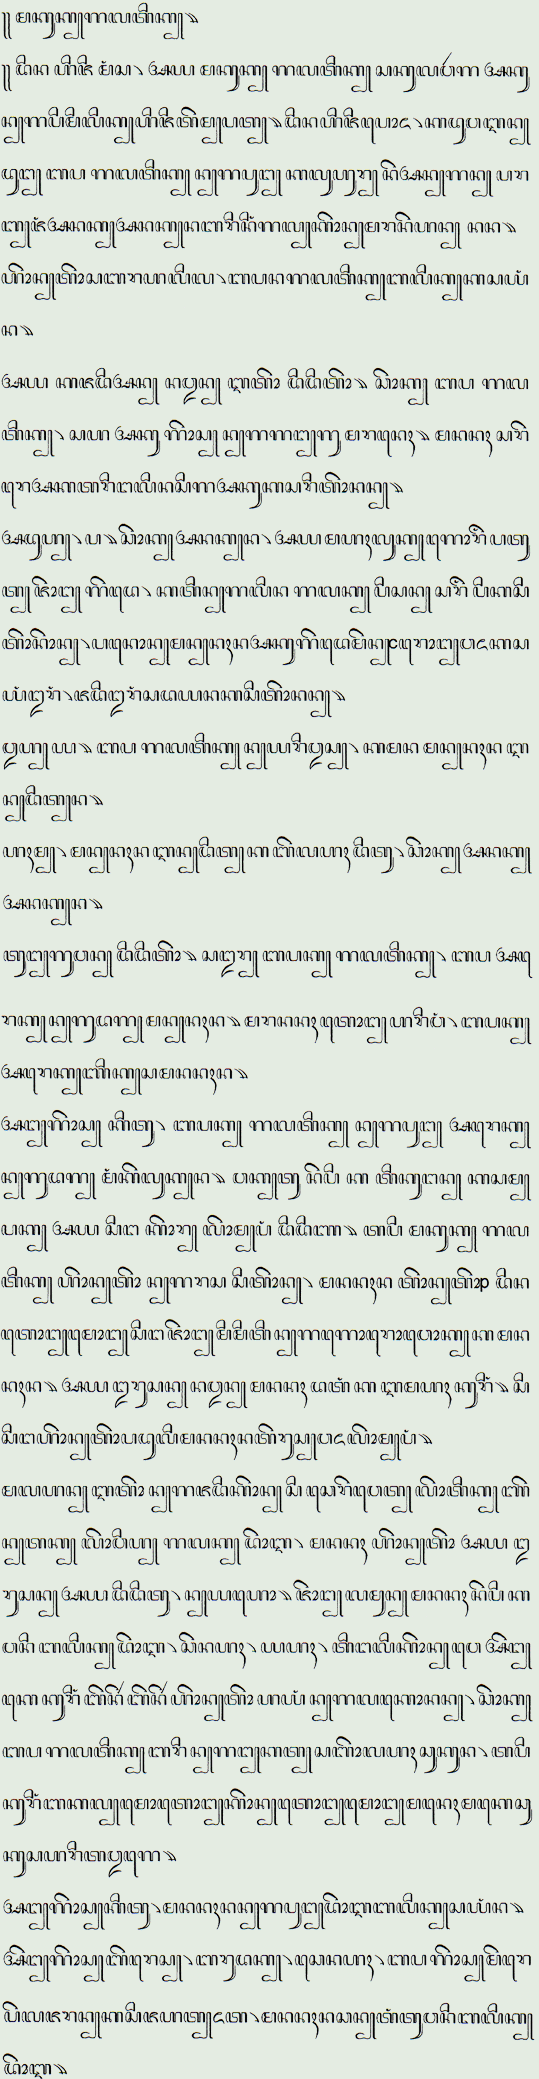 Sundanese in Javanese script